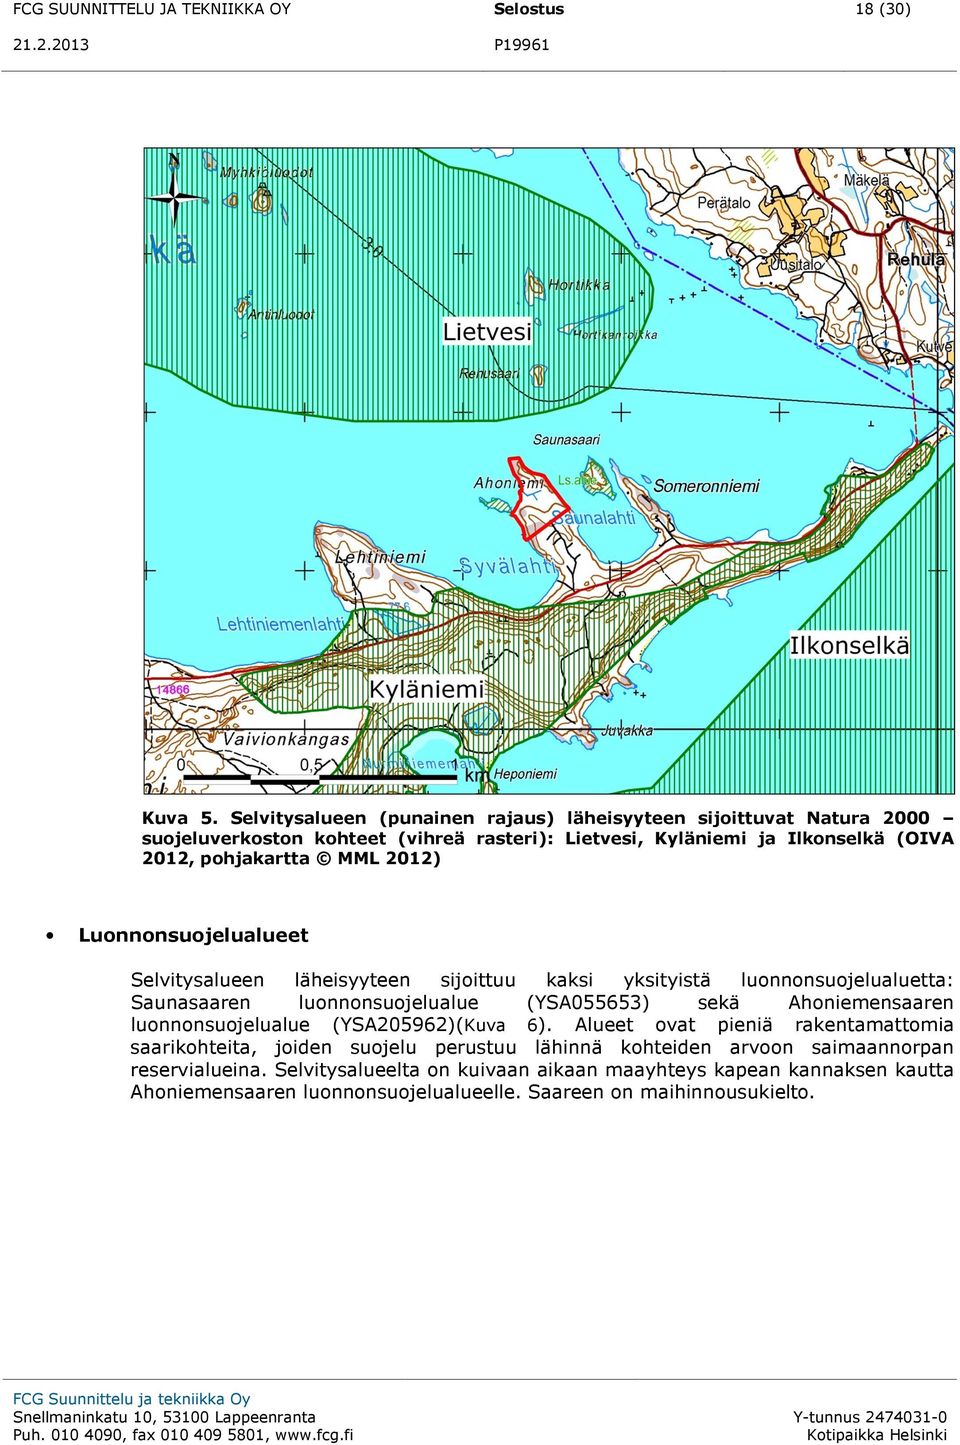 Luonnonsuojelualueet Selvitysalueen läheisyyteen sijoittuu kaksi yksityistä luonnonsuojelualuetta: Saunasaaren luonnonsuojelualue (YSA055653) sekä Ahoniemensaaren luonnonsuojelualue